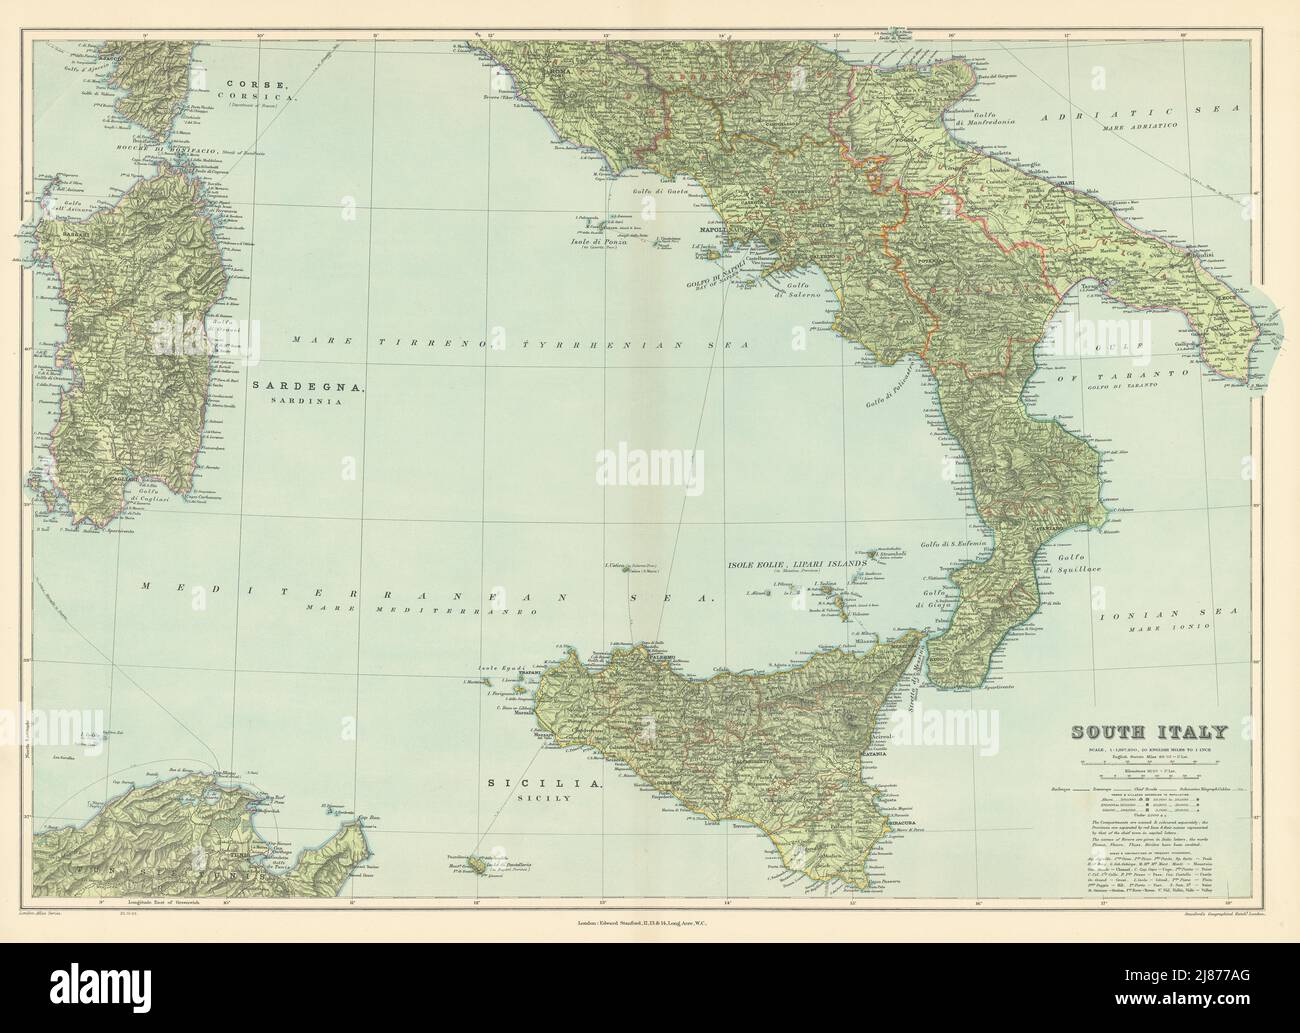 Süditalien. Sizilien Kalabrien Apulien Abruzzen Latium Kampanien. Karte VON STANFORD 1904 Stockfoto